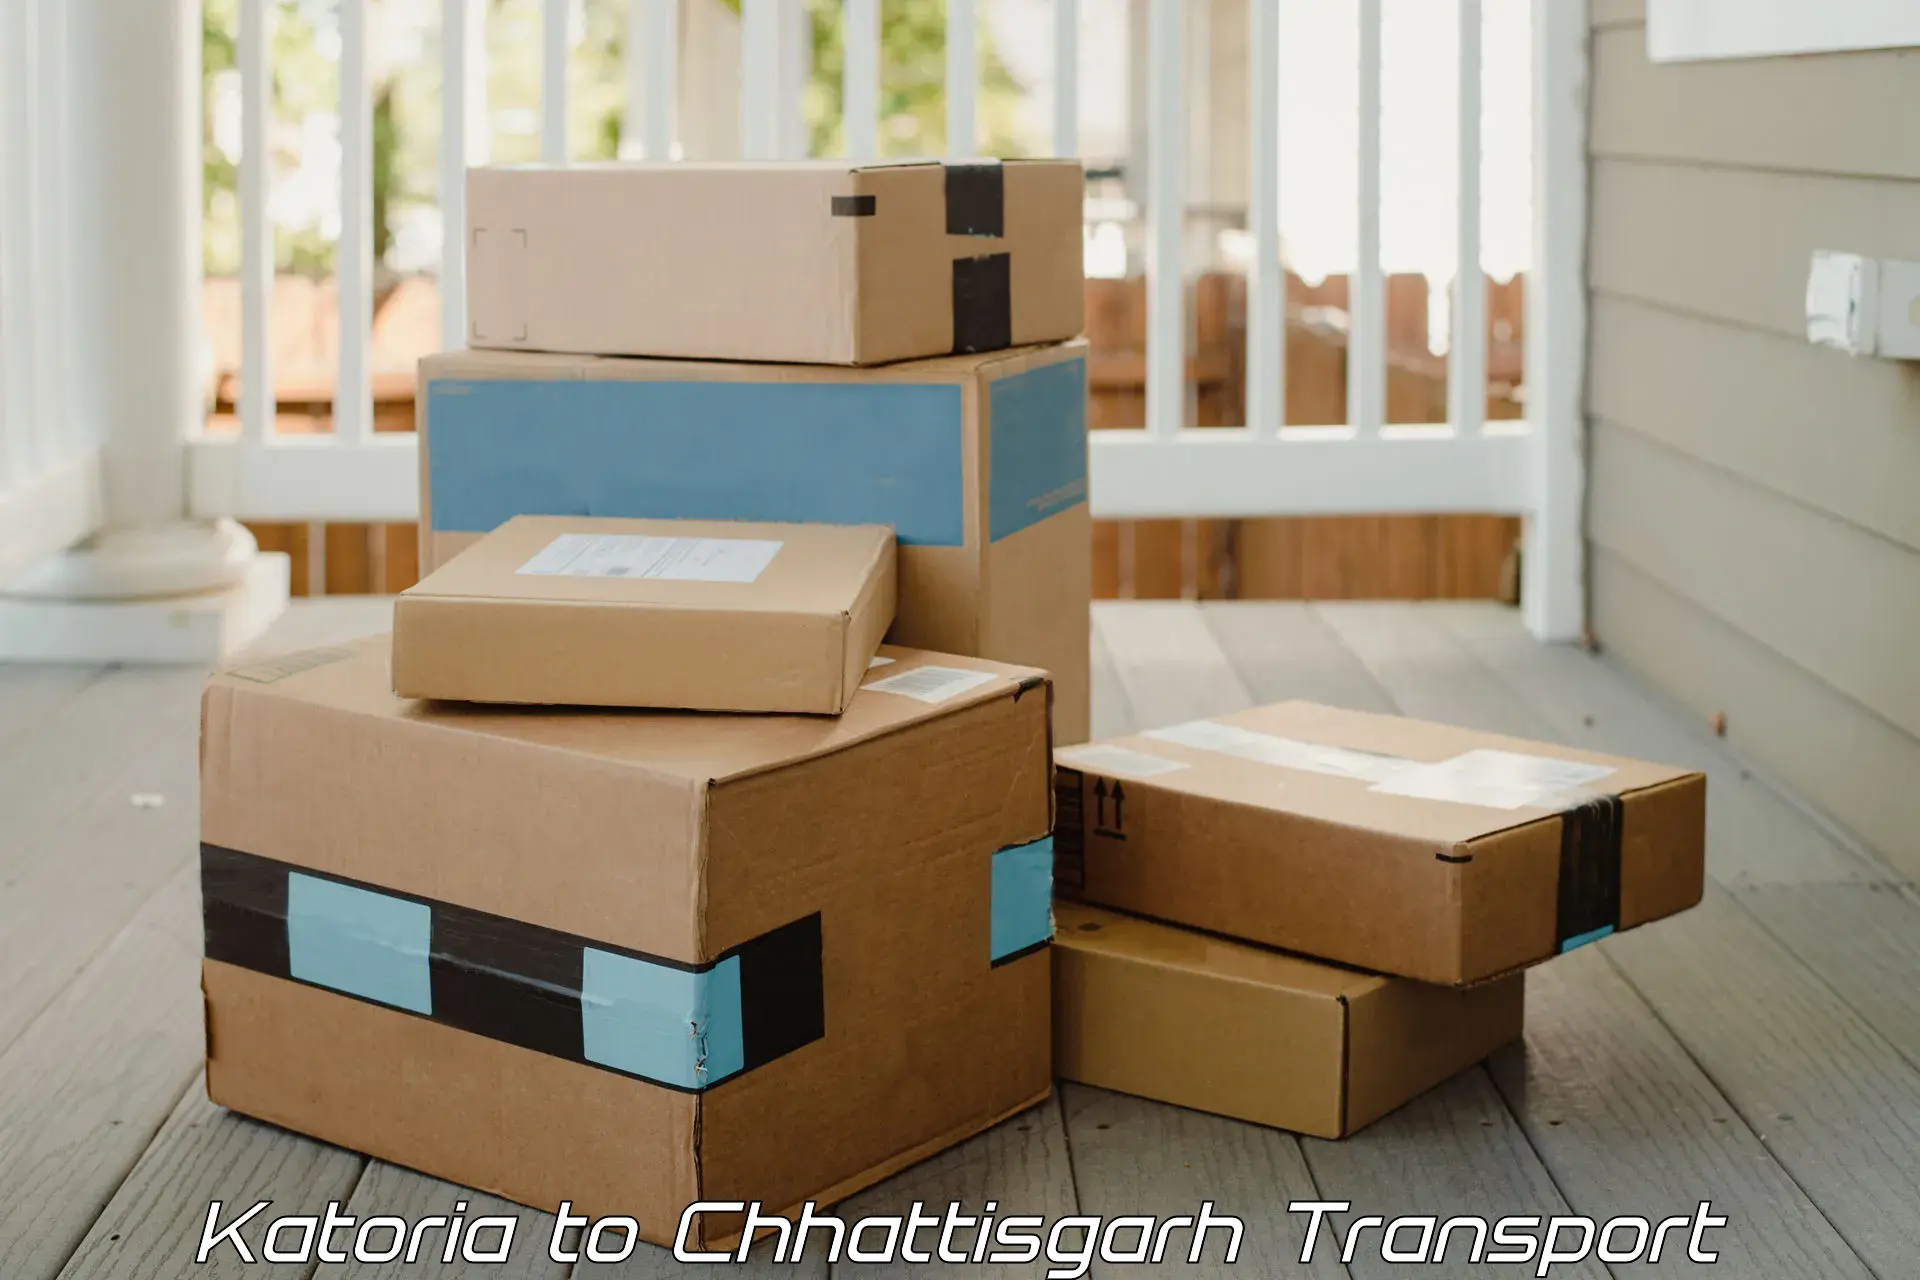 Two wheeler parcel service Katoria to Patna Chhattisgarh